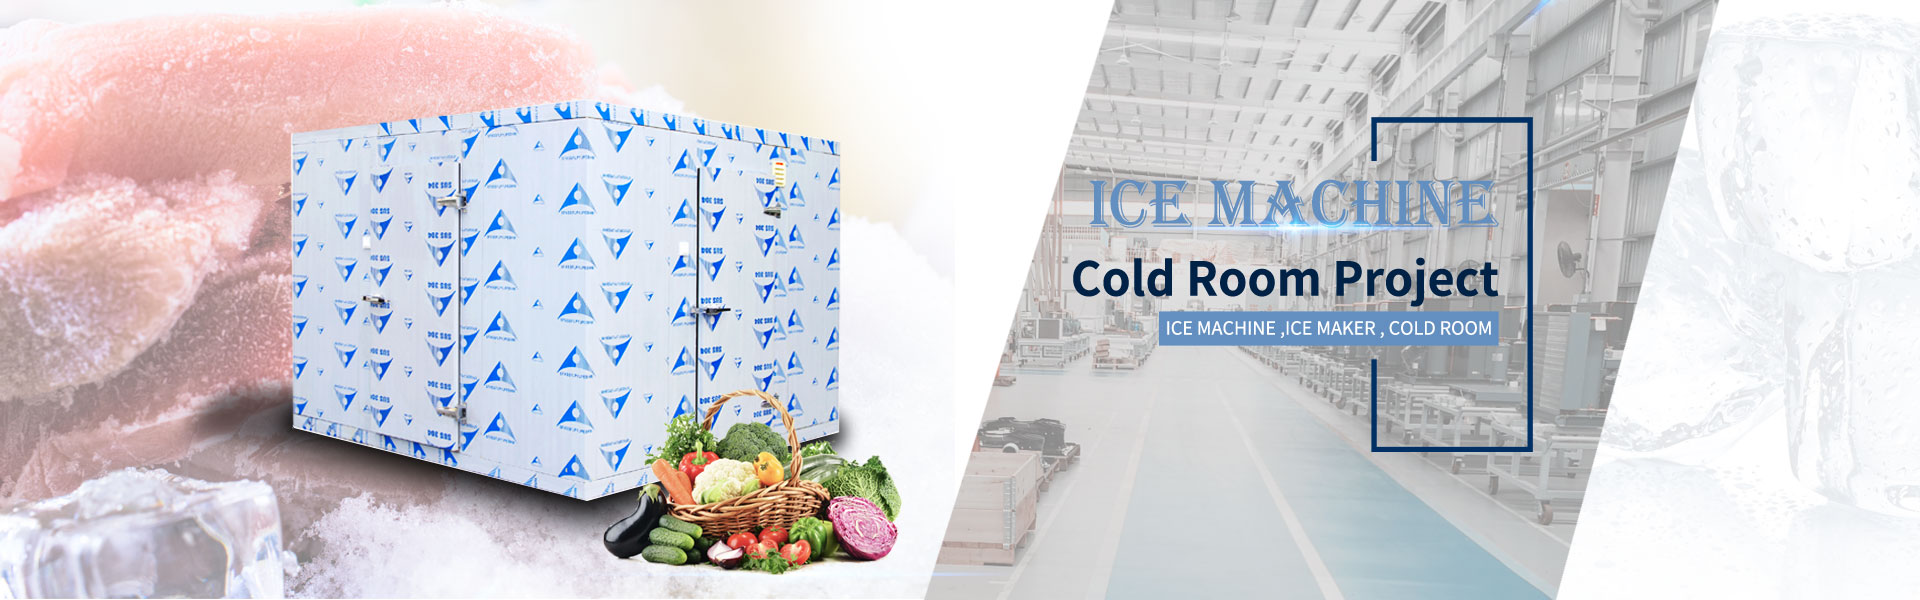 máquina de gelo, máquina de fazer gelo, câmara fria,Guangzhou Hefforts Refrigeration Equipment Co.,Ltd.